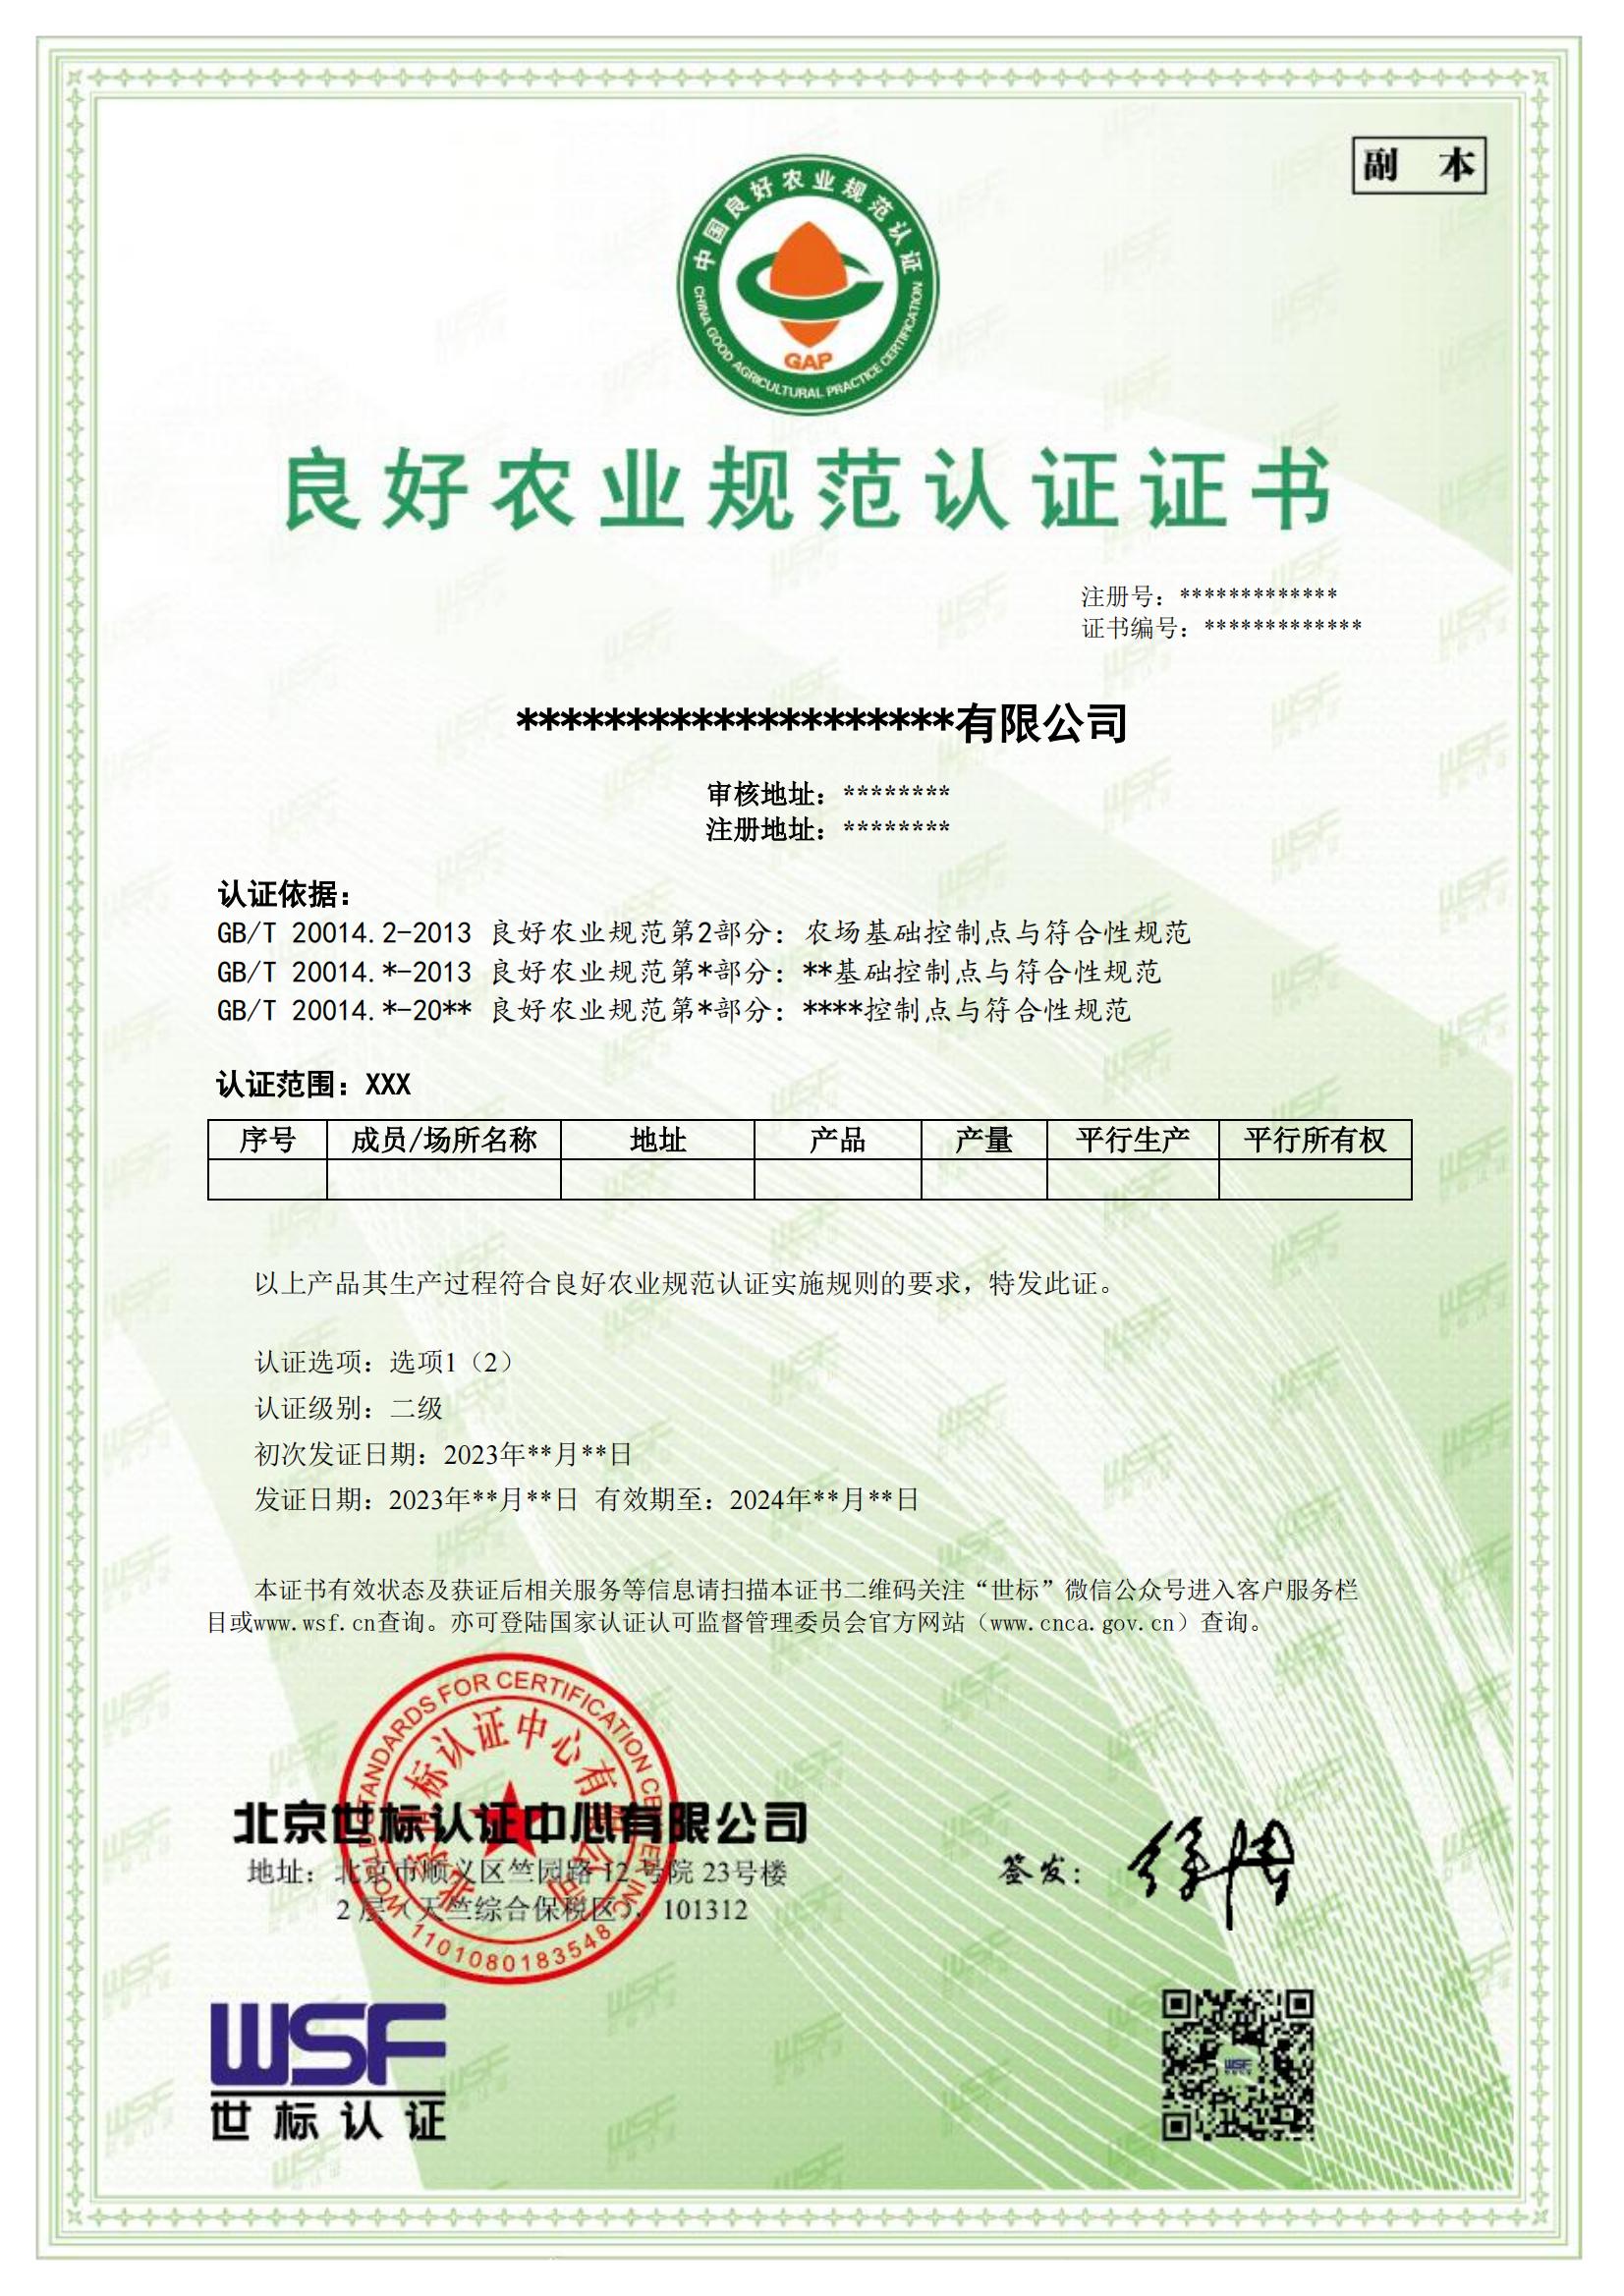 良好农业规范GAP认证证书样本-中文_00.jpg